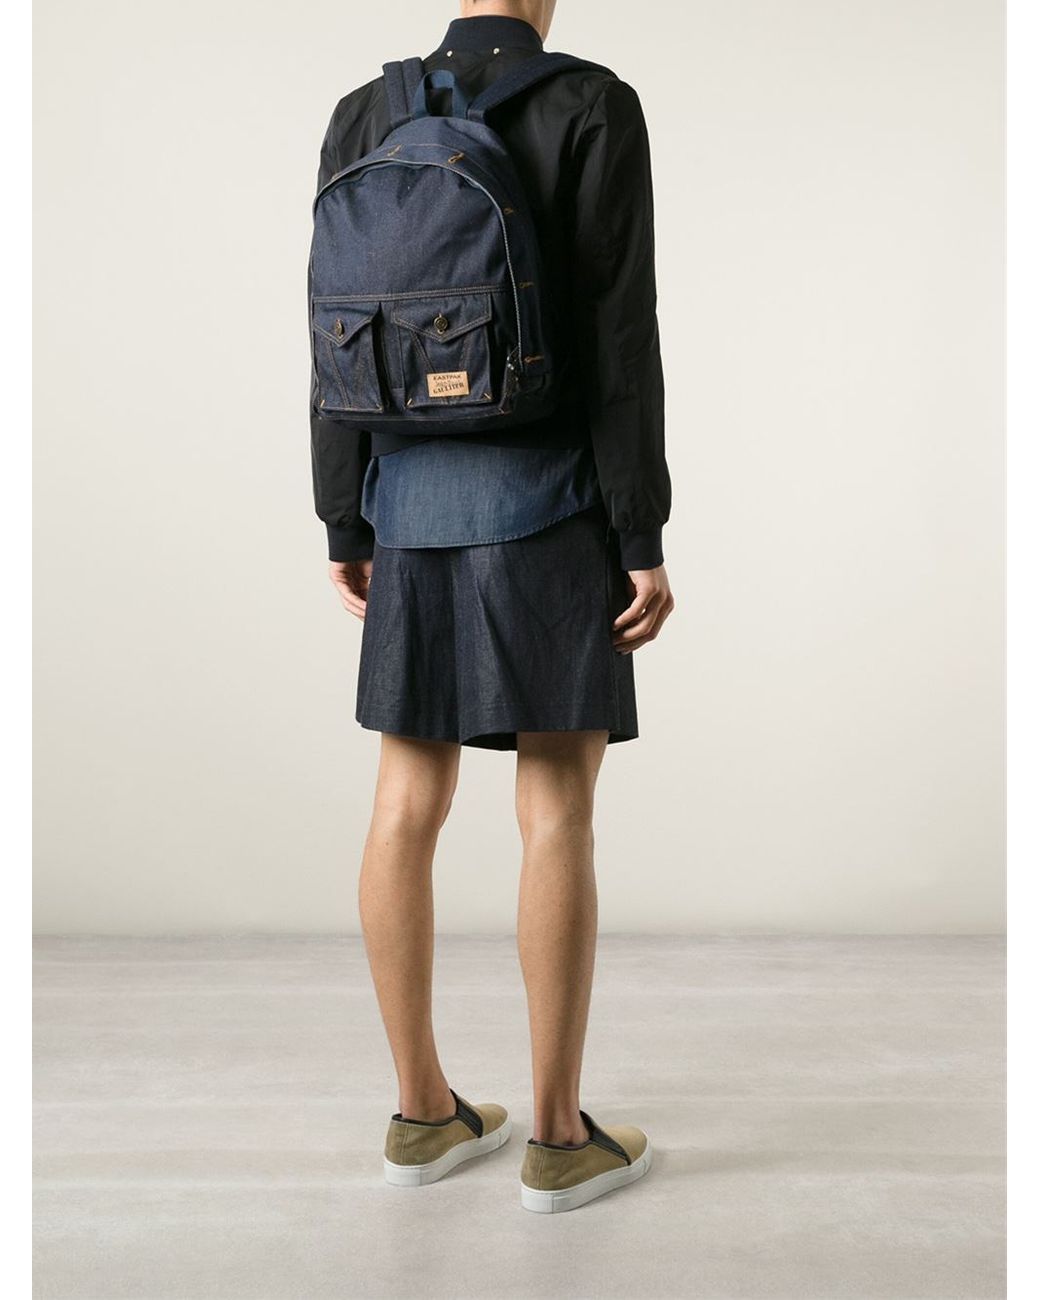 Eastpak Eastpack X Jean Paul Gaultier 'Jeans' Backpack in Blue for Men |  Lyst